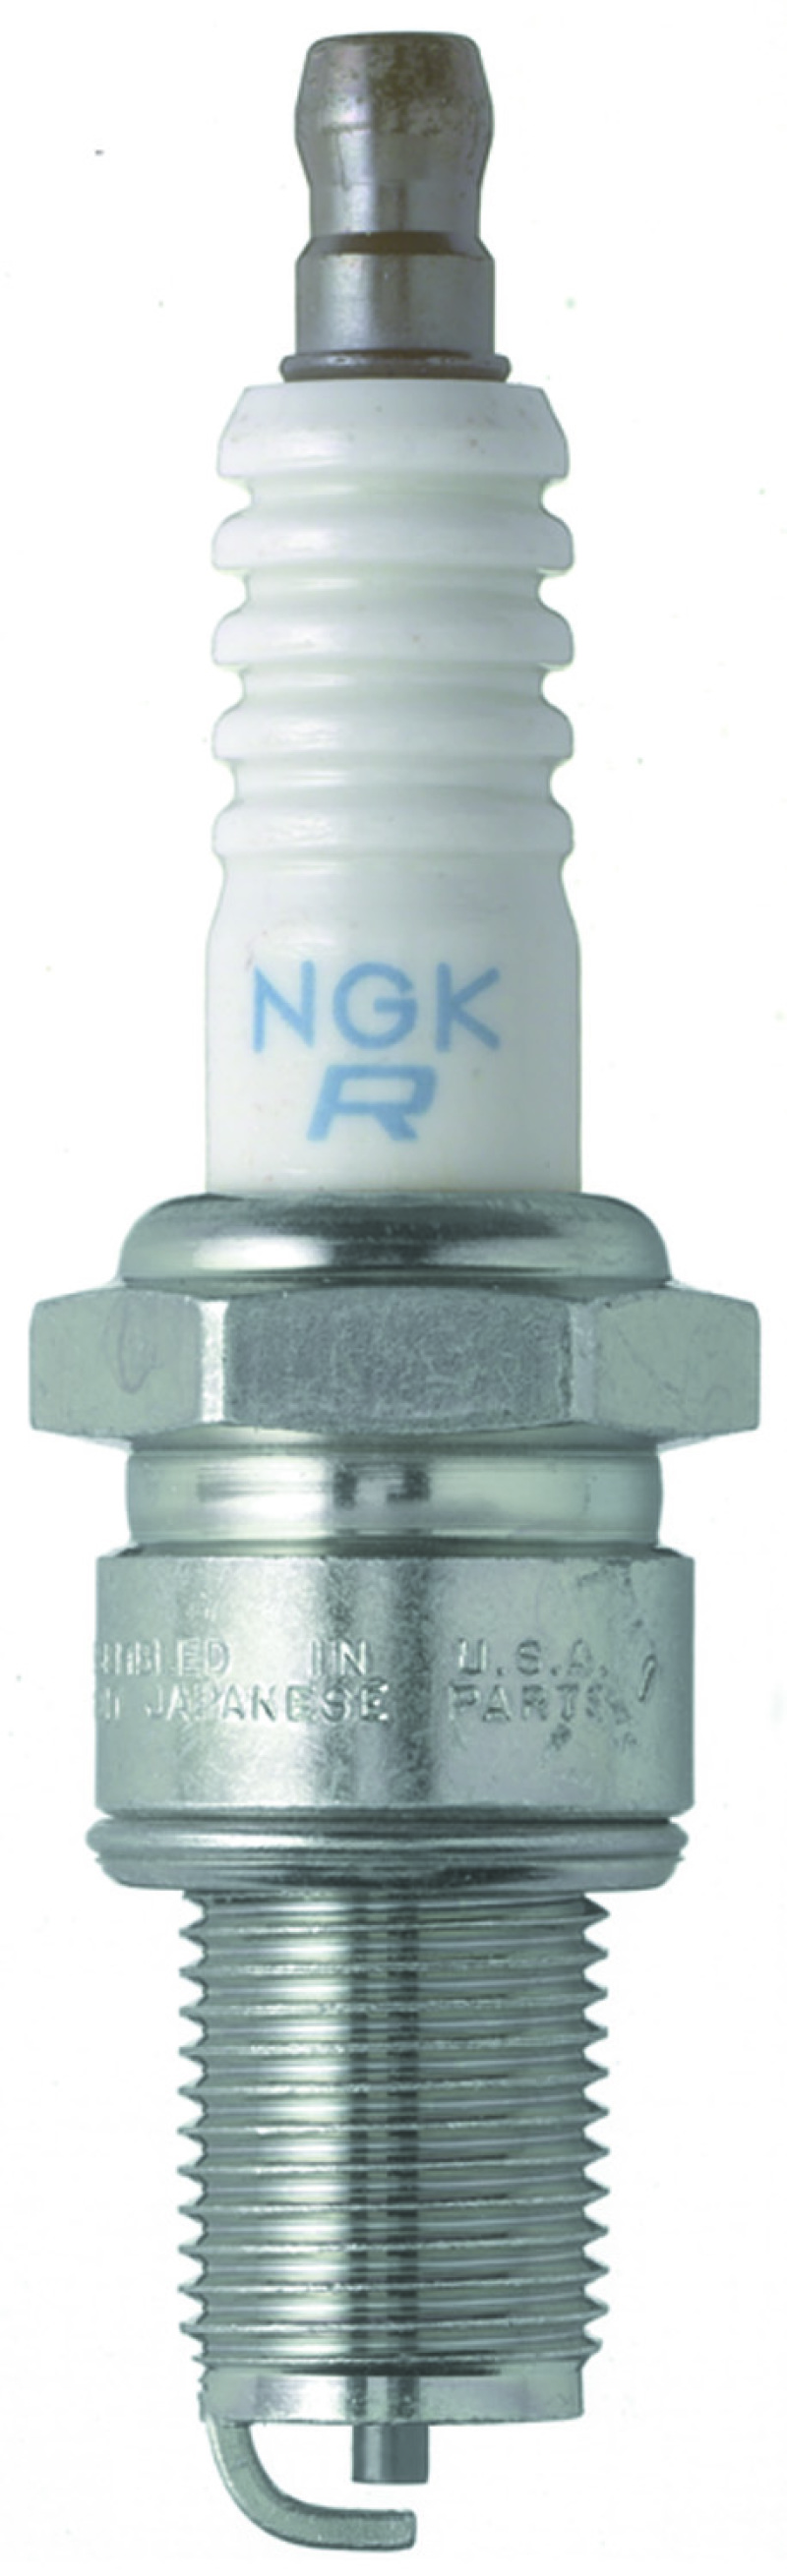 NGK Nickel Spark Plug Box of 4 (BR9EYA) - 7548